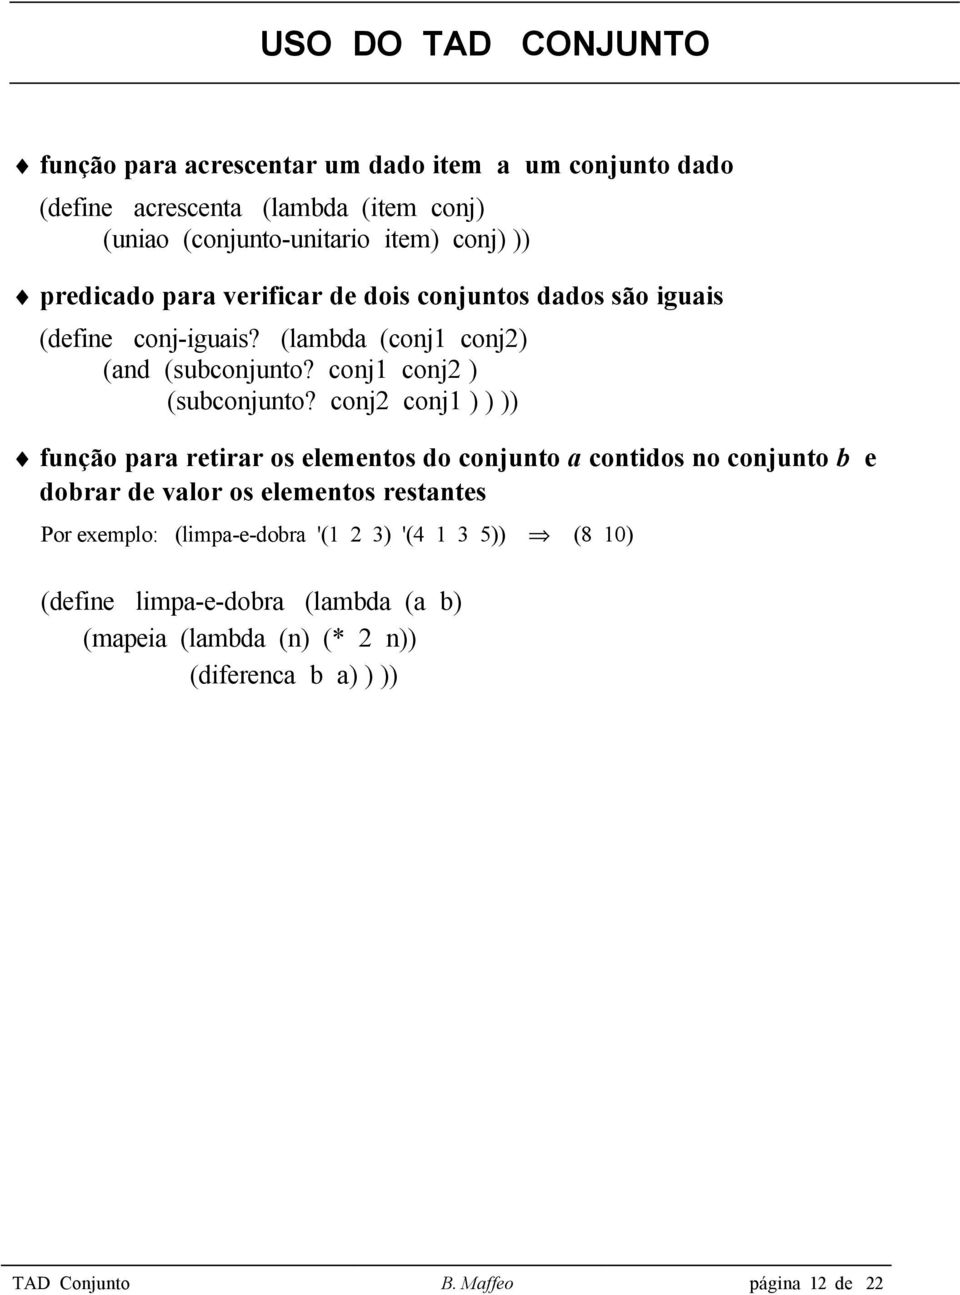 conj2 conj1 ) ) )) função para retirar os elementos do conjunto a contidos no conjunto b e dobrar de valor os elementos restantes Por exemplo: